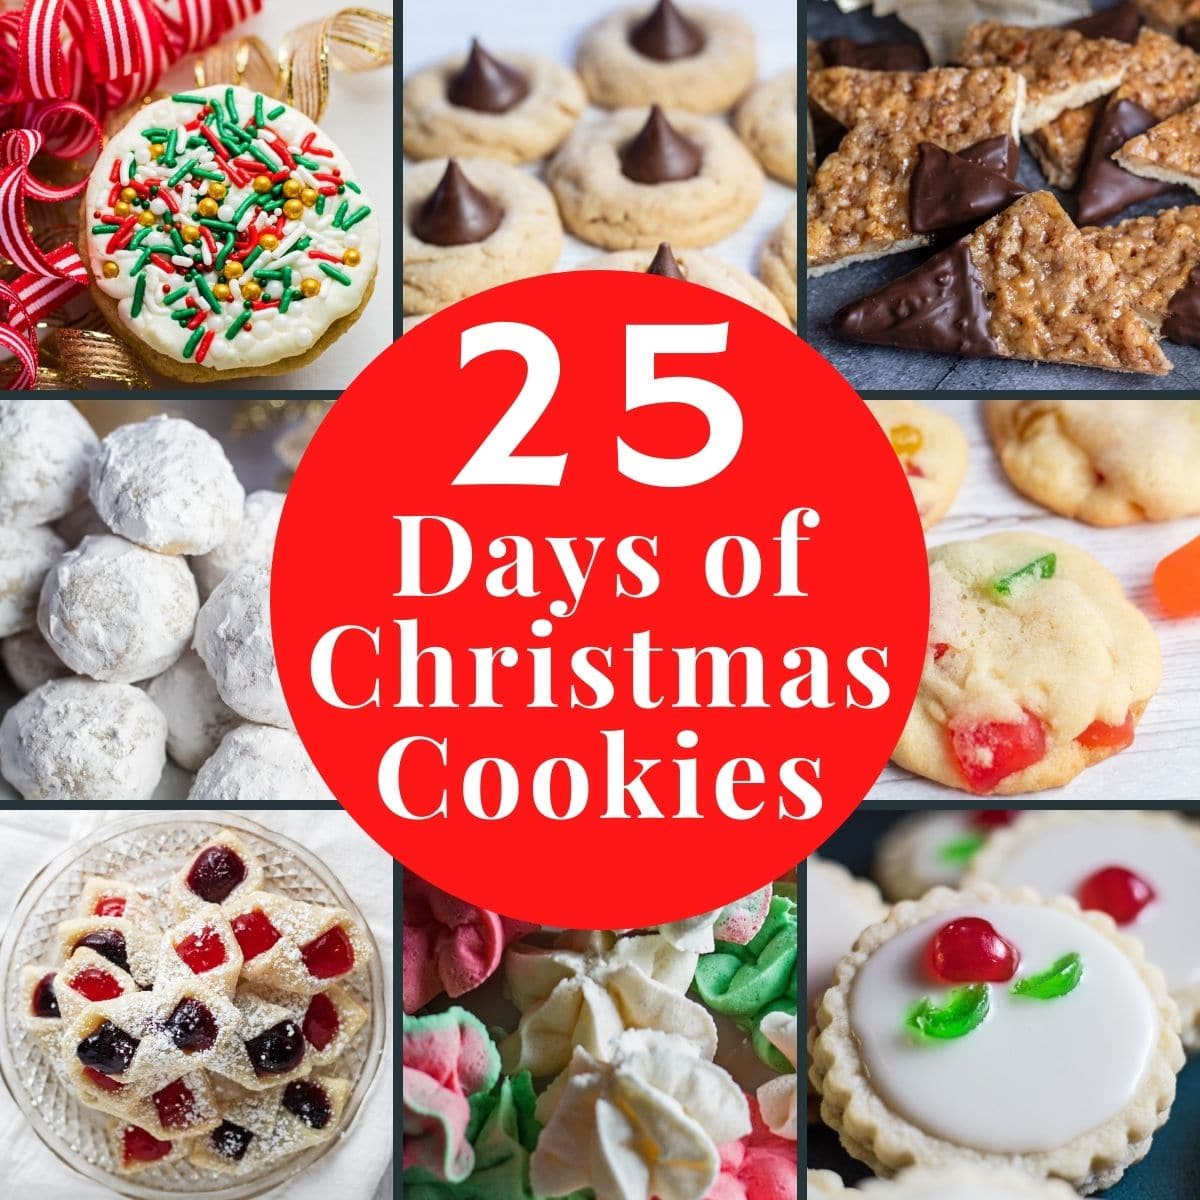 25 दिनों की क्रिसमस कुकीज़ 8 टाइलों और टेक्स्ट ओवरले के साथ छवि कोलाज करती हैं।